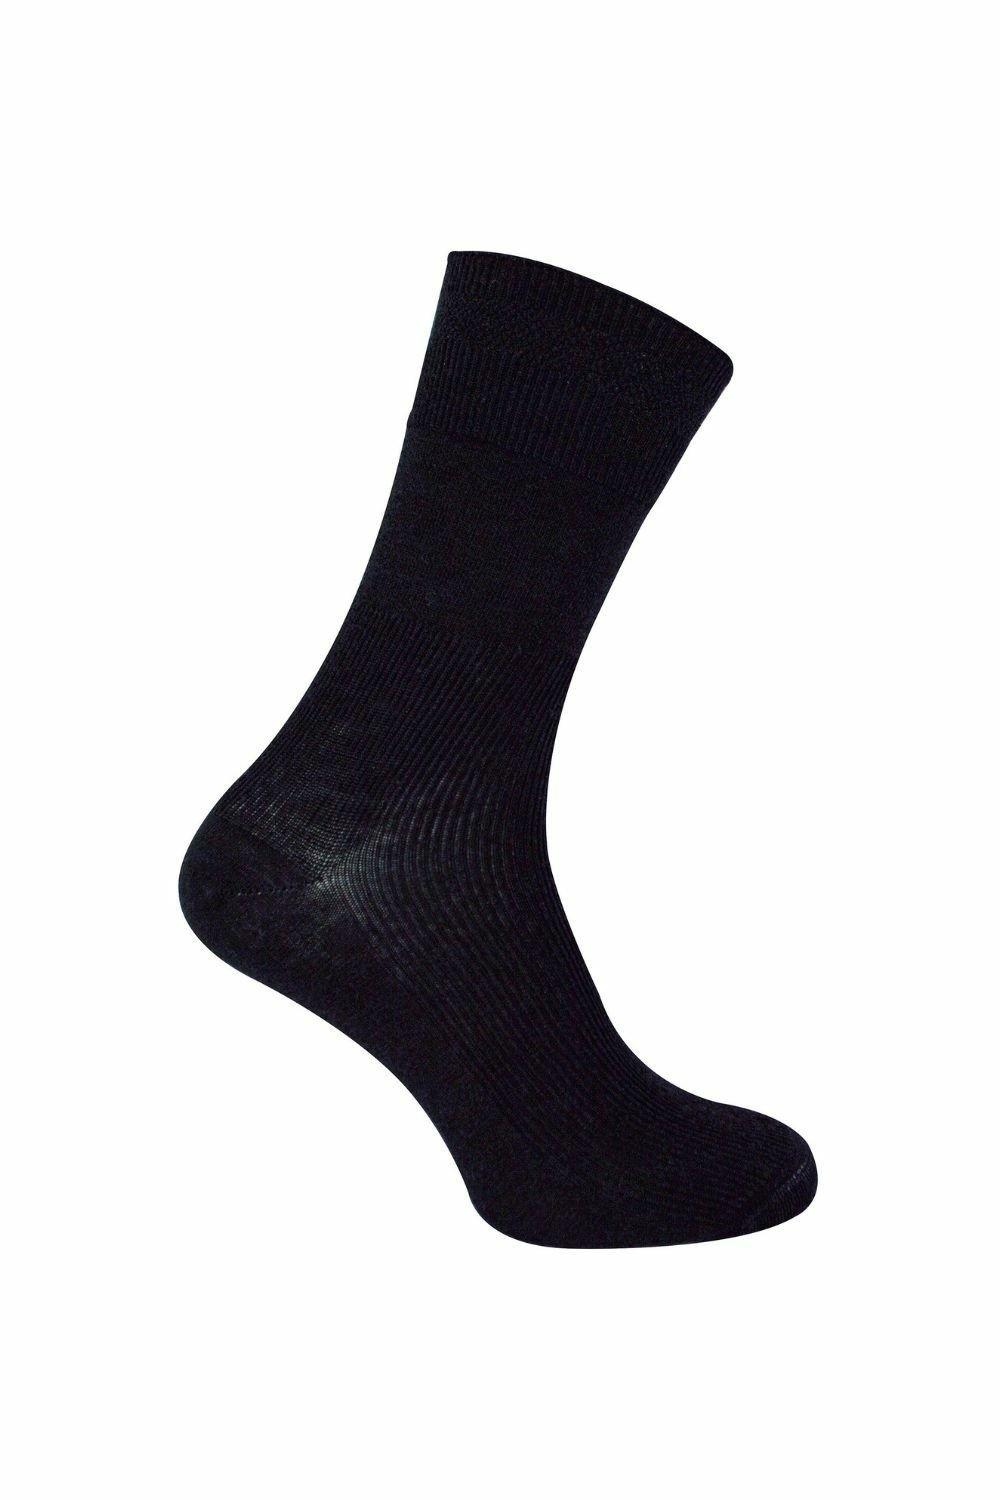 3 Pair Multipack Merino Wool Diabetic Socks for Swollen Legs